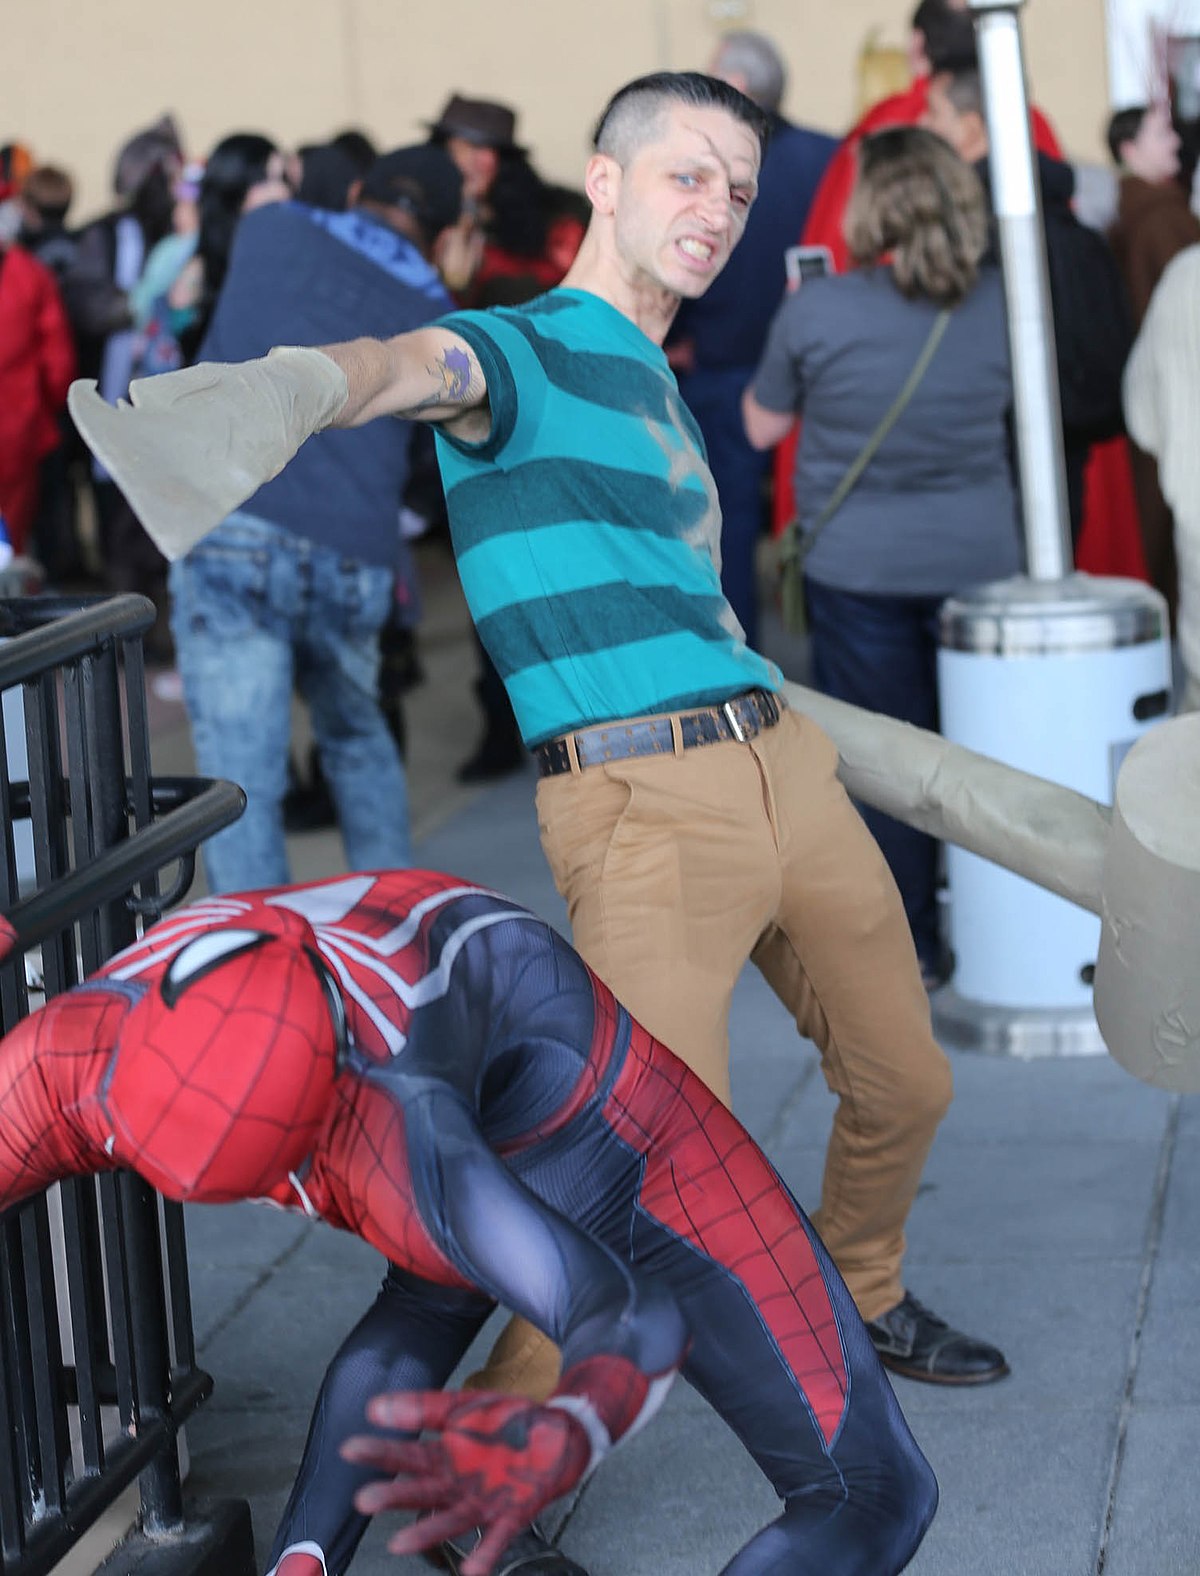 Marvel Premiere Asombroso Spiderman 11 El retorno del Duende Verde